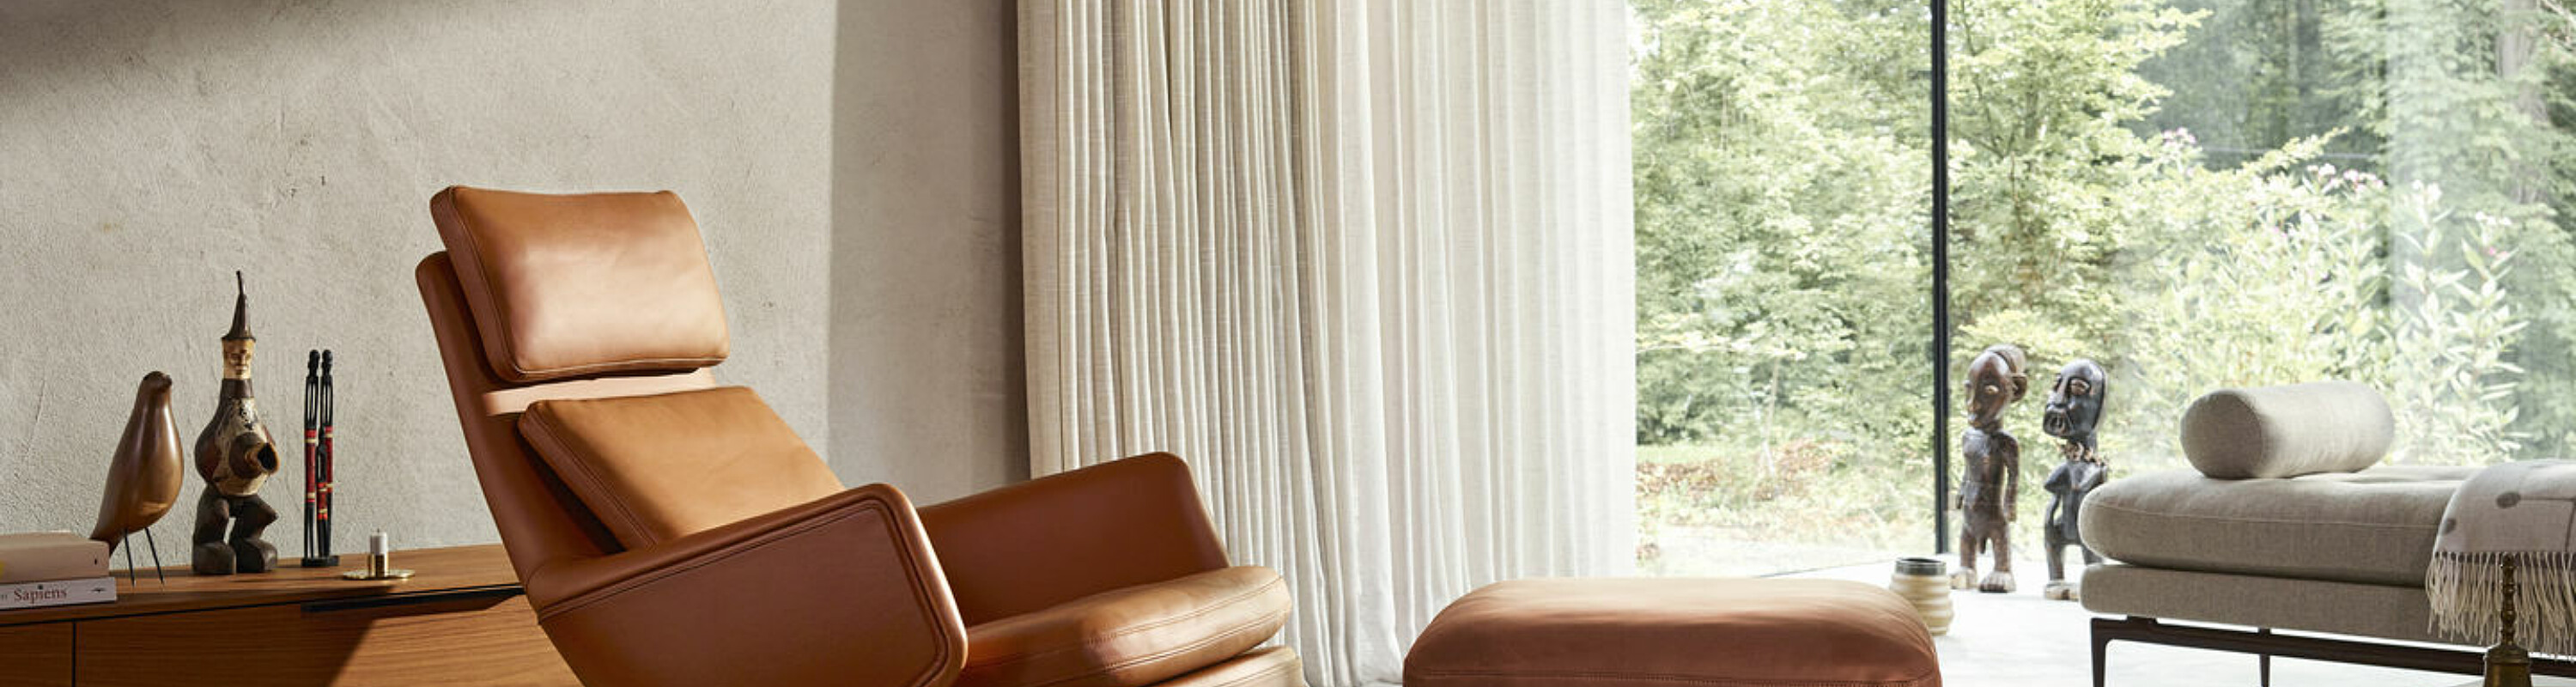 Grand Relax is een moderne lounge fauteuil met relaxsysteem. 